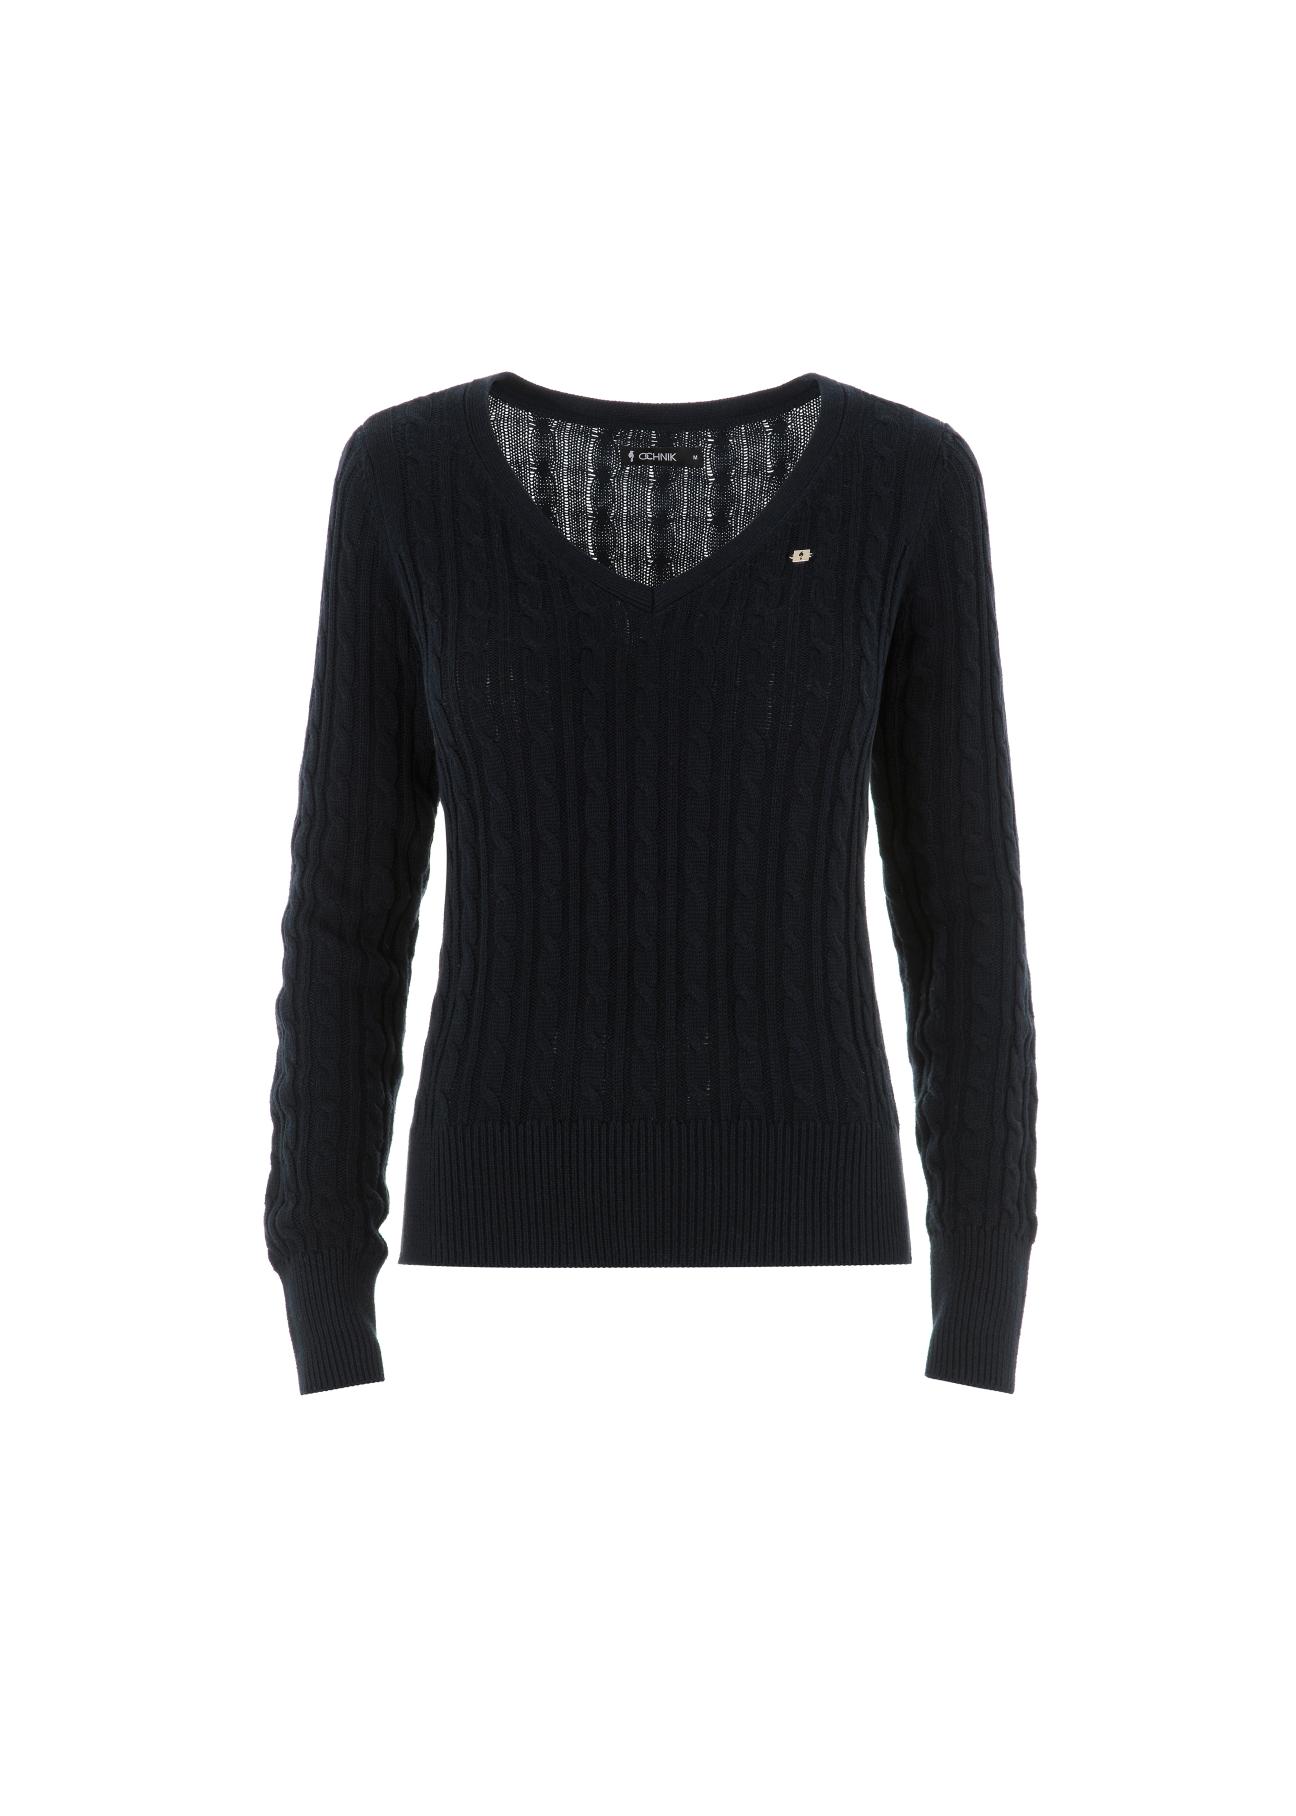 Granatowy sweter dekolt V damski SWEDT-0148-69(Z21)